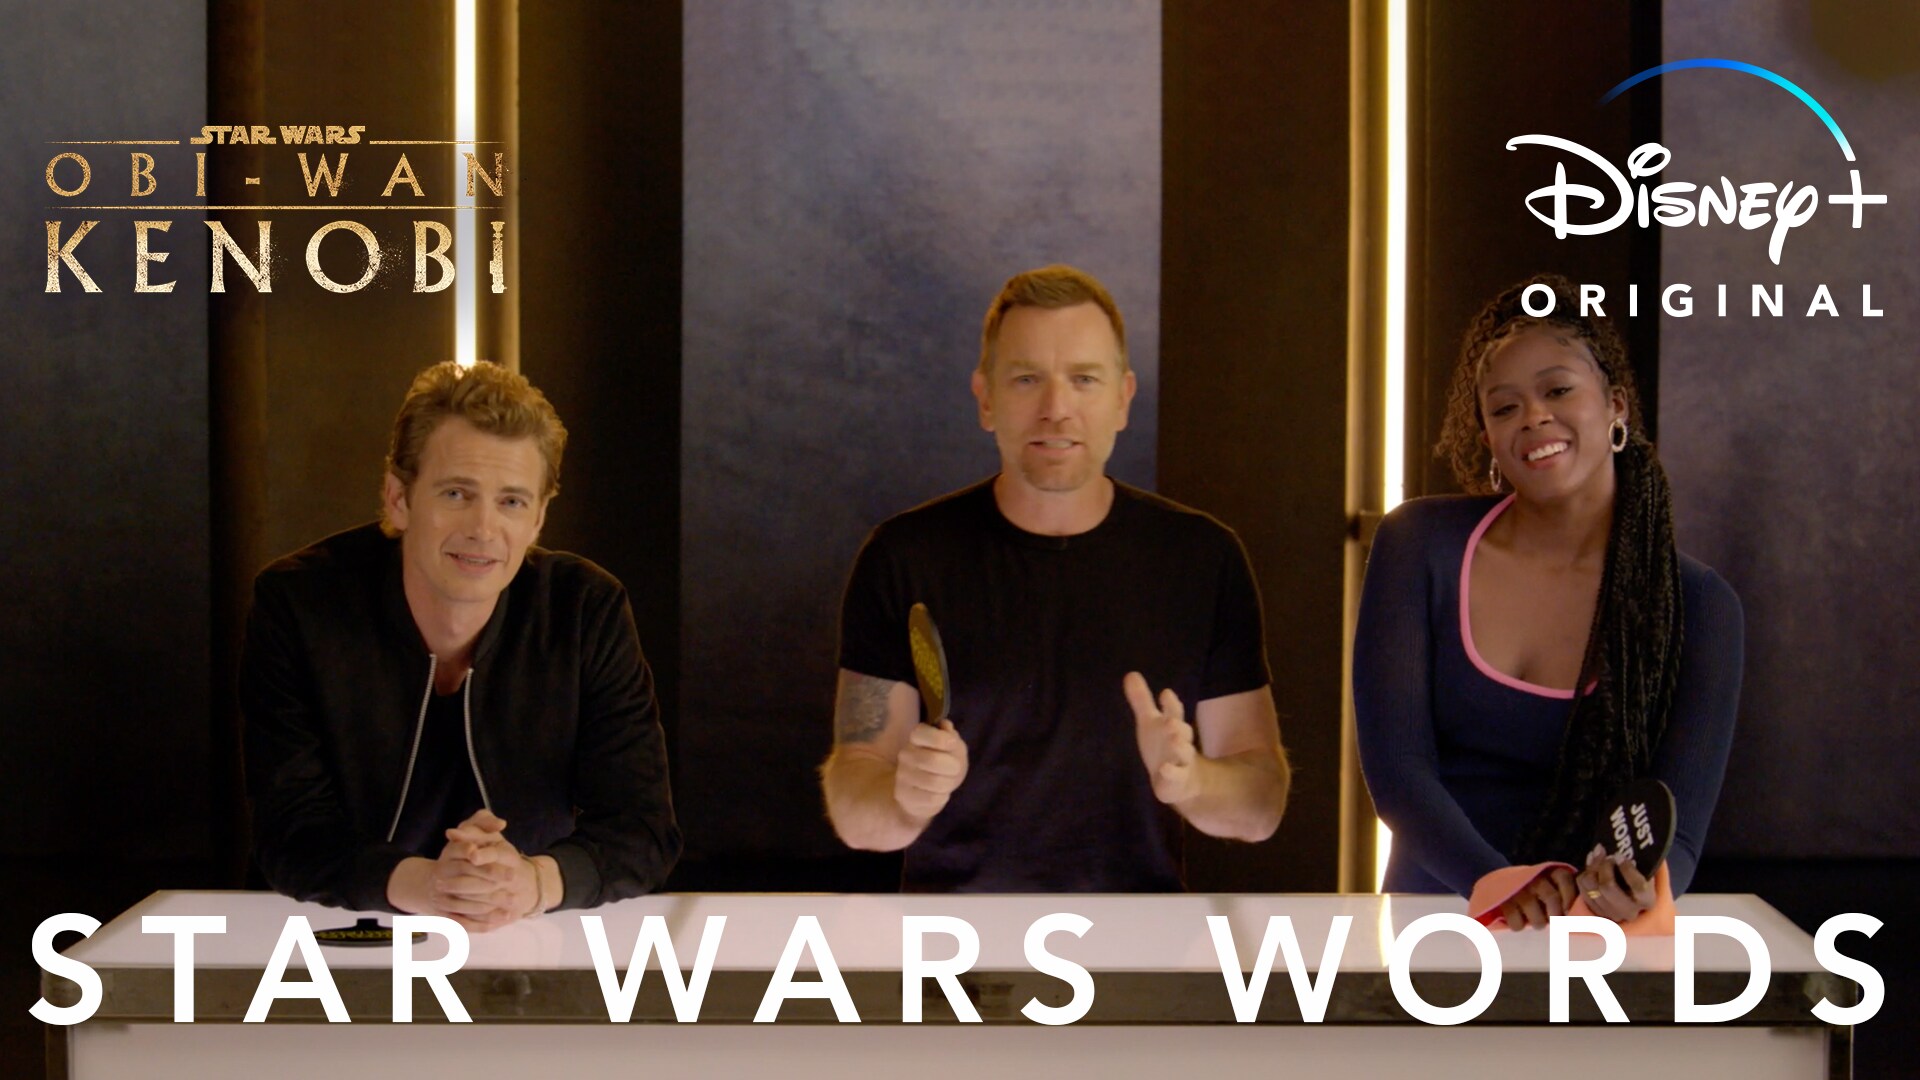 Star Wars Words or Just Words? | Obi-Wan Kenobi | Disney+